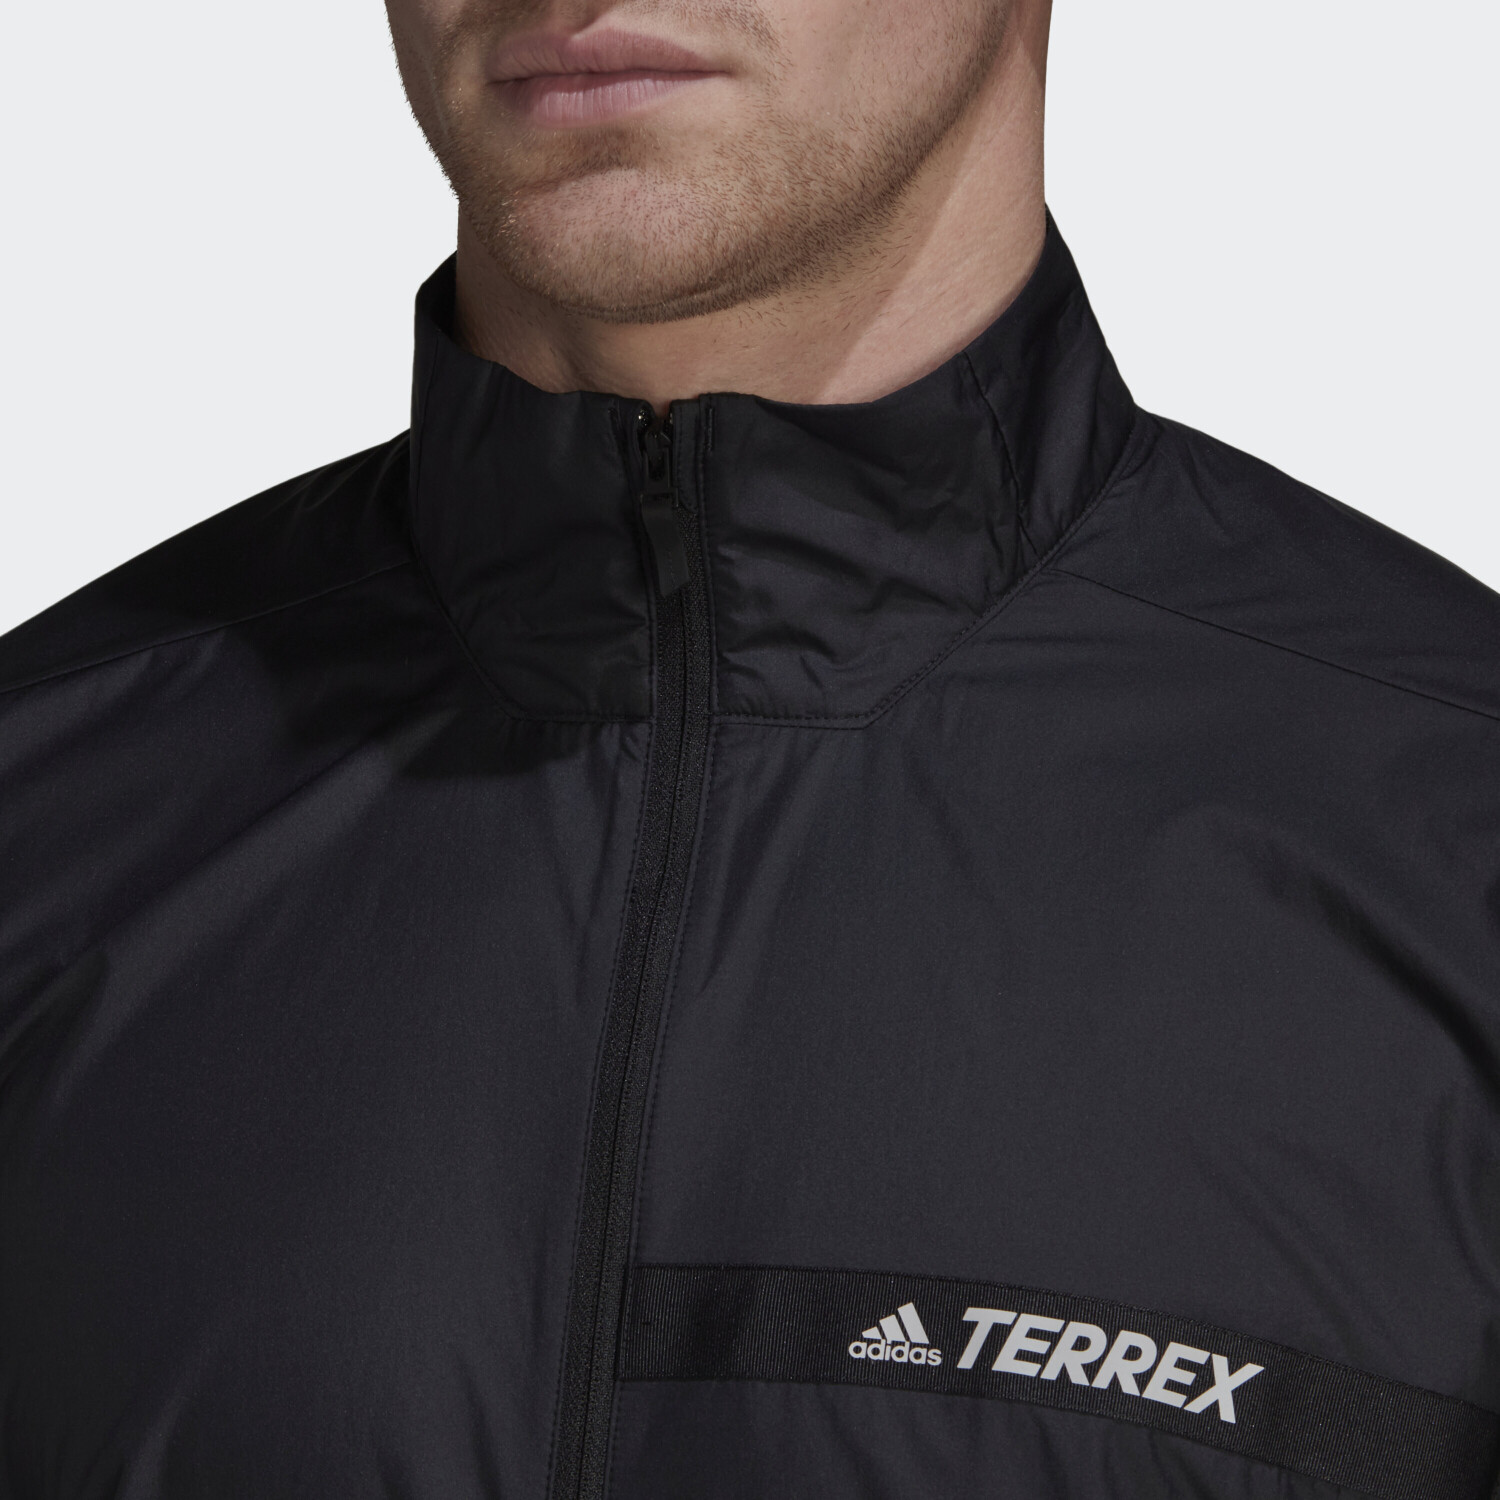 Adidas Terrex ab Preisvergleich black € Multi Wind | Jacket (H53405) 44,65 bei